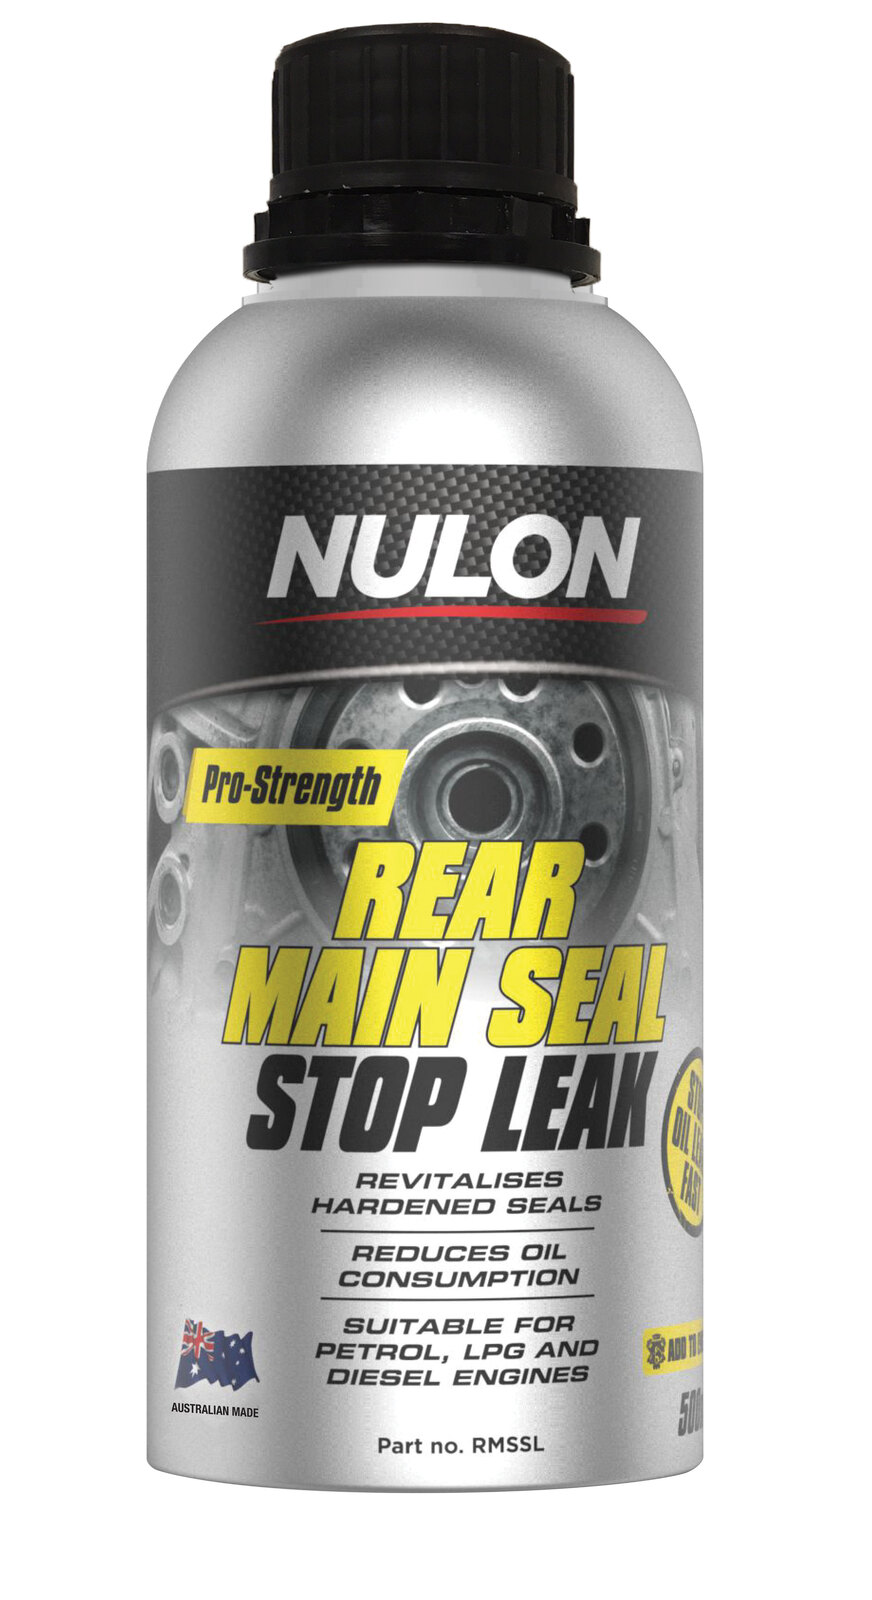 NULON 500ml Pro-Strength Rear Main Seal Stop Leak, Each